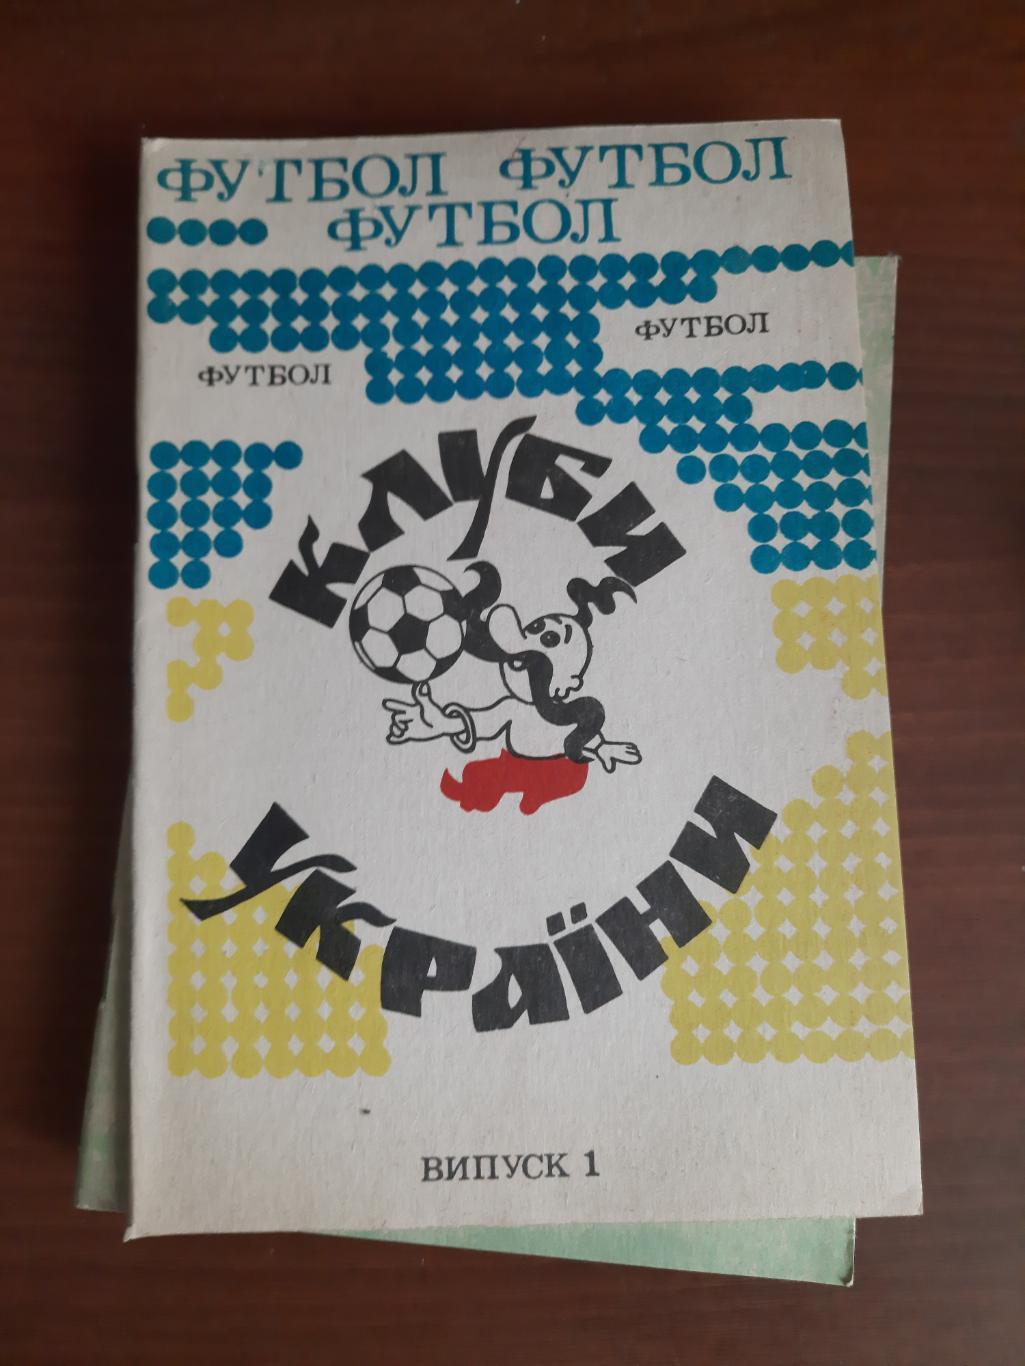 Клубы Украины Житомир, 1992